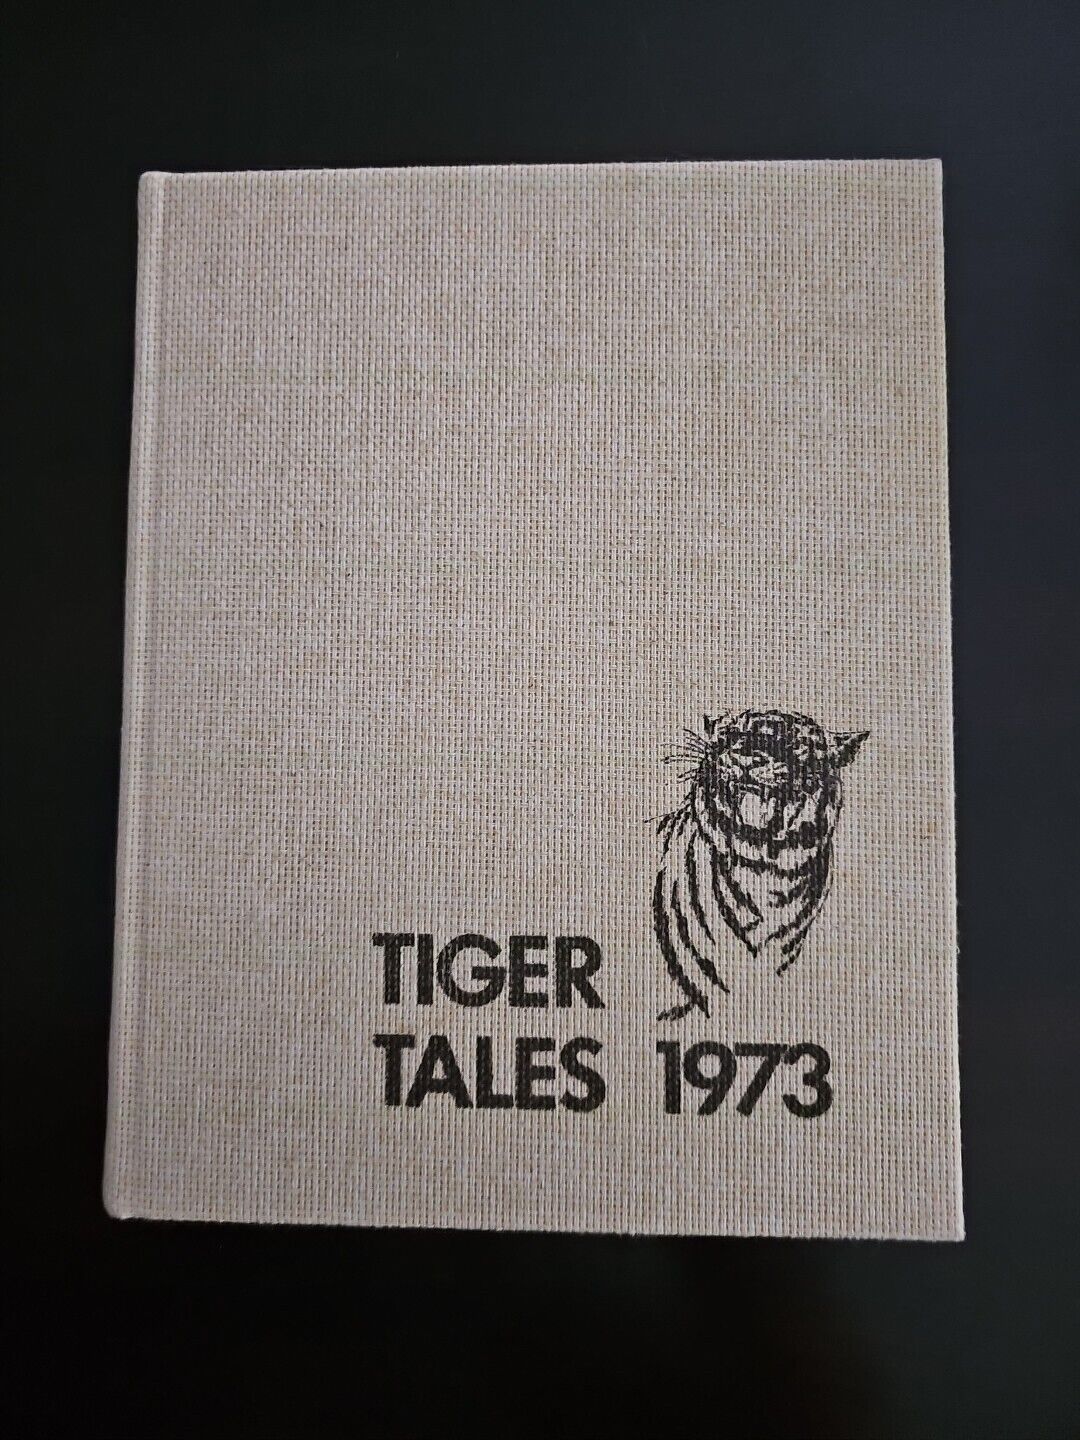 Yearbook: Tiger Tales 1973, Eufaula High School, Eufaula Alabama